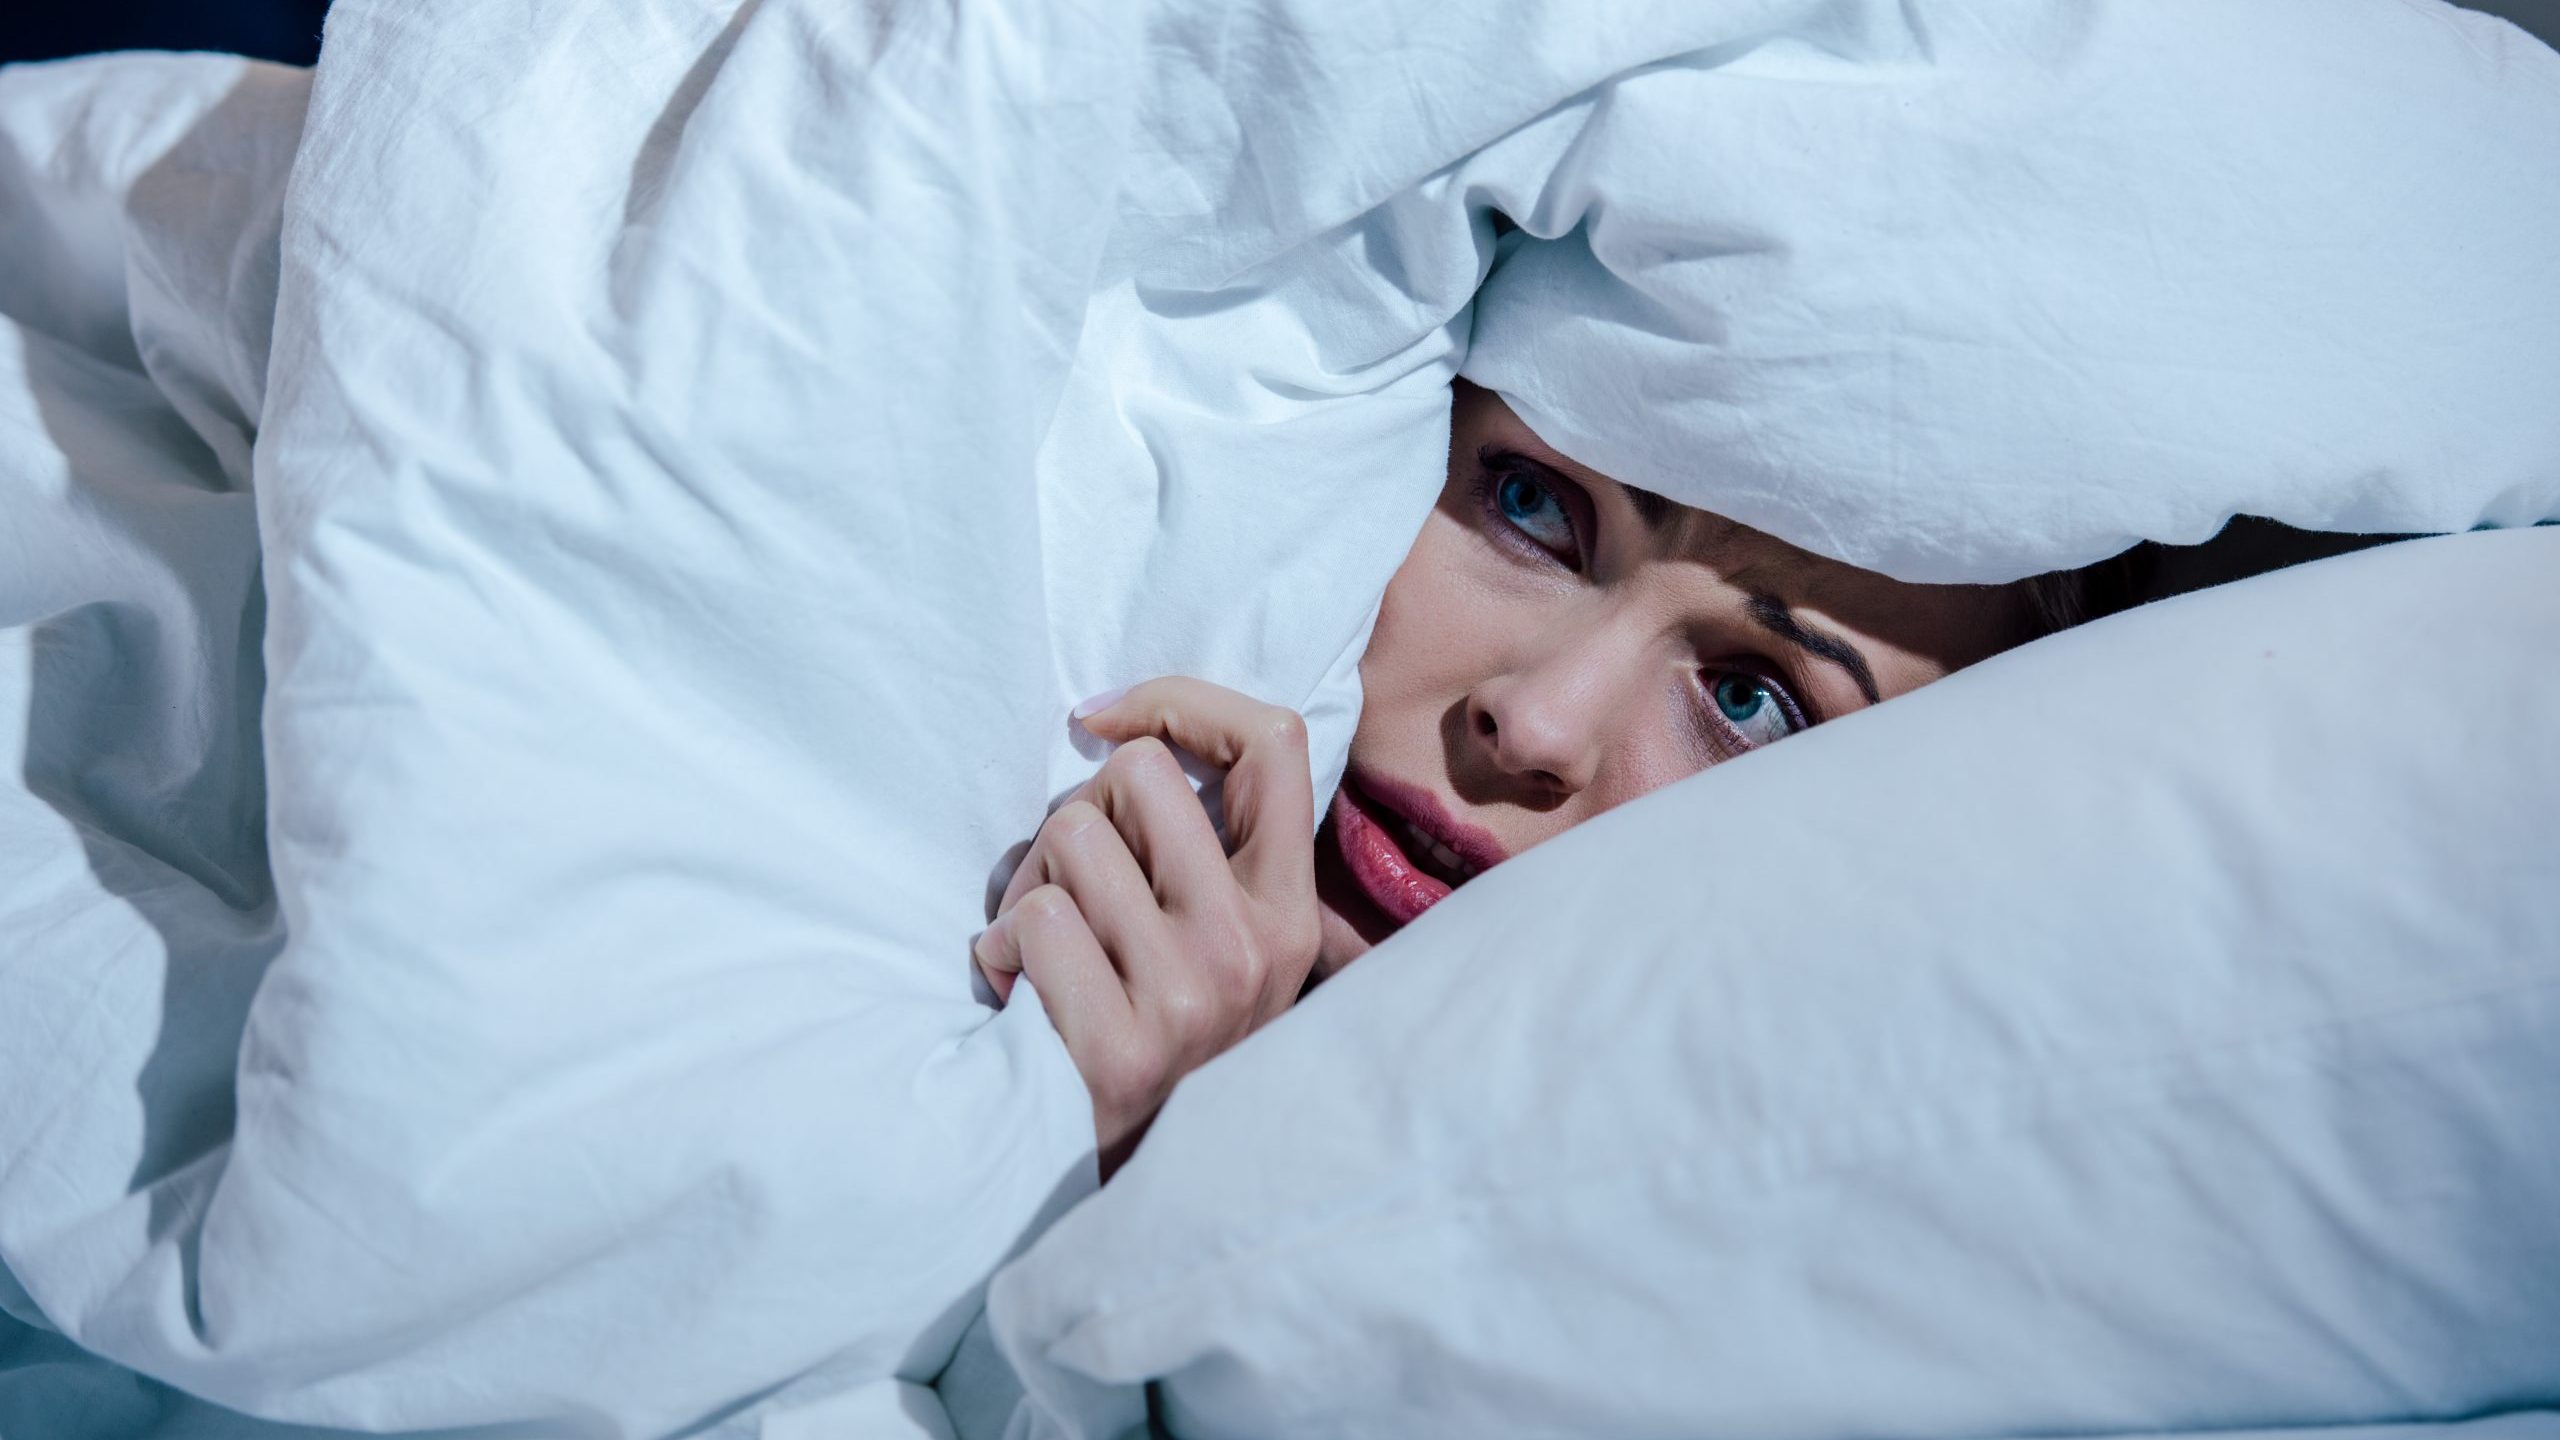 Scared woman hides behind blanket